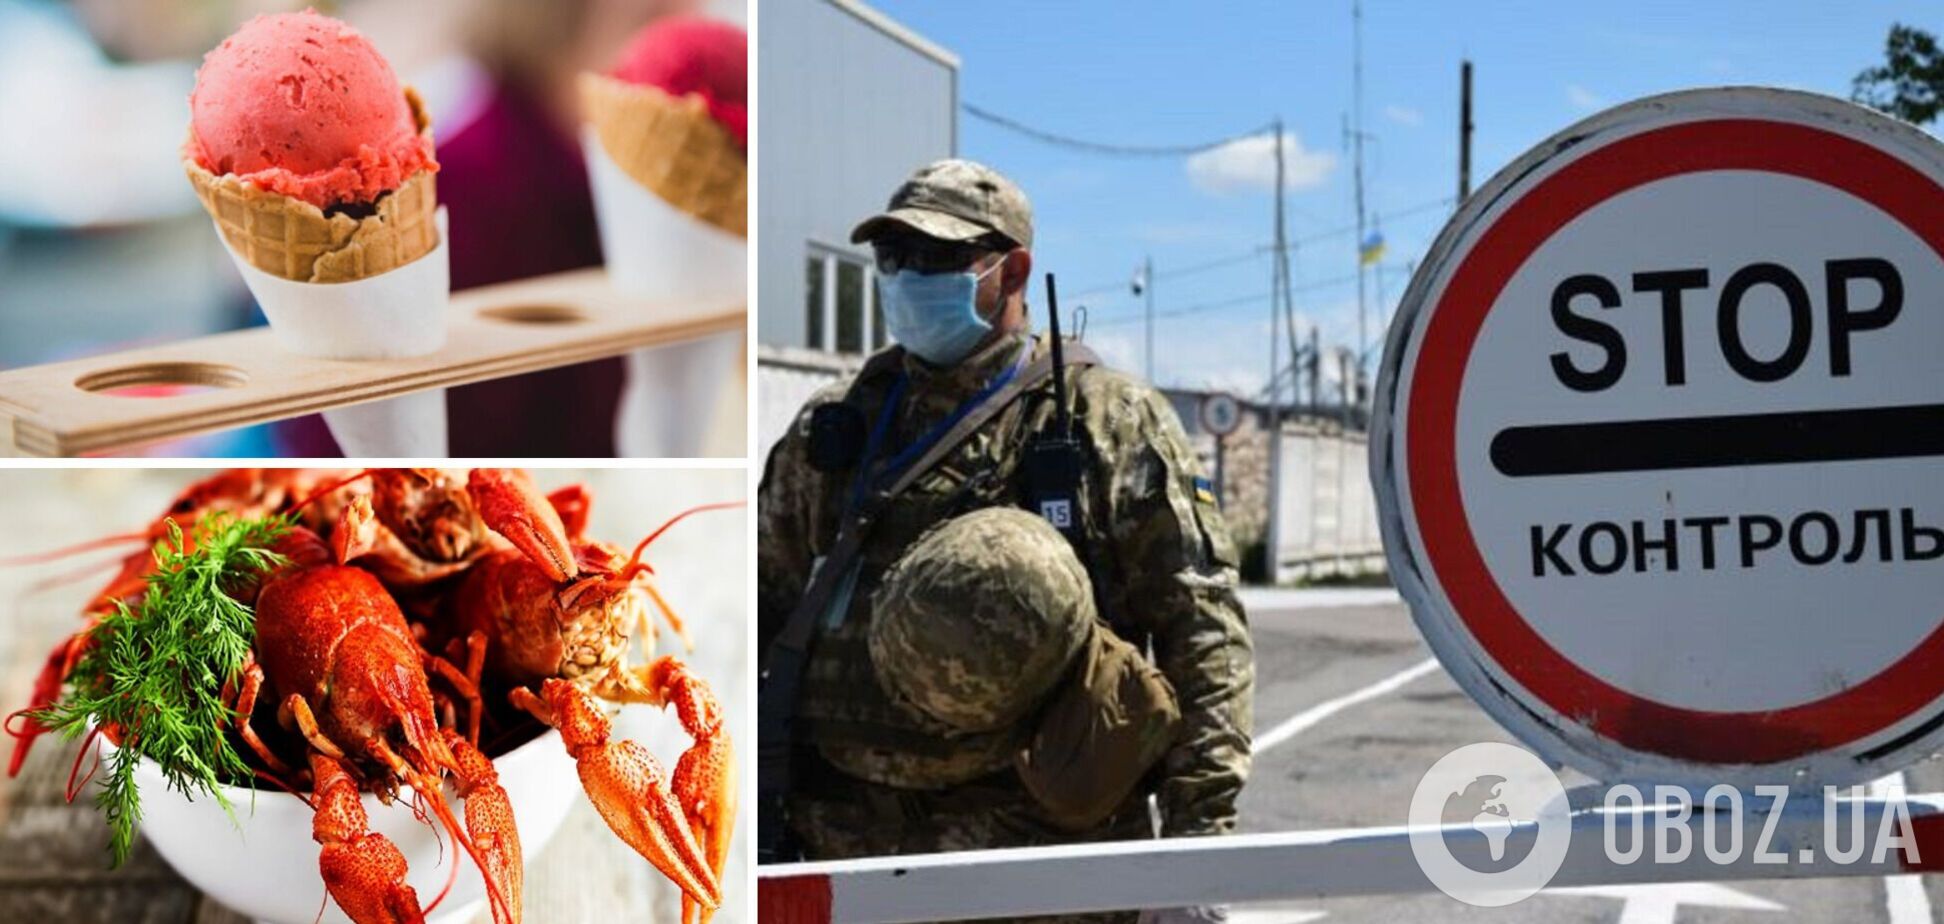 Россия запретила ввозить из Украины мороженое, газировку и раков: какие еще продукты попали под санкции